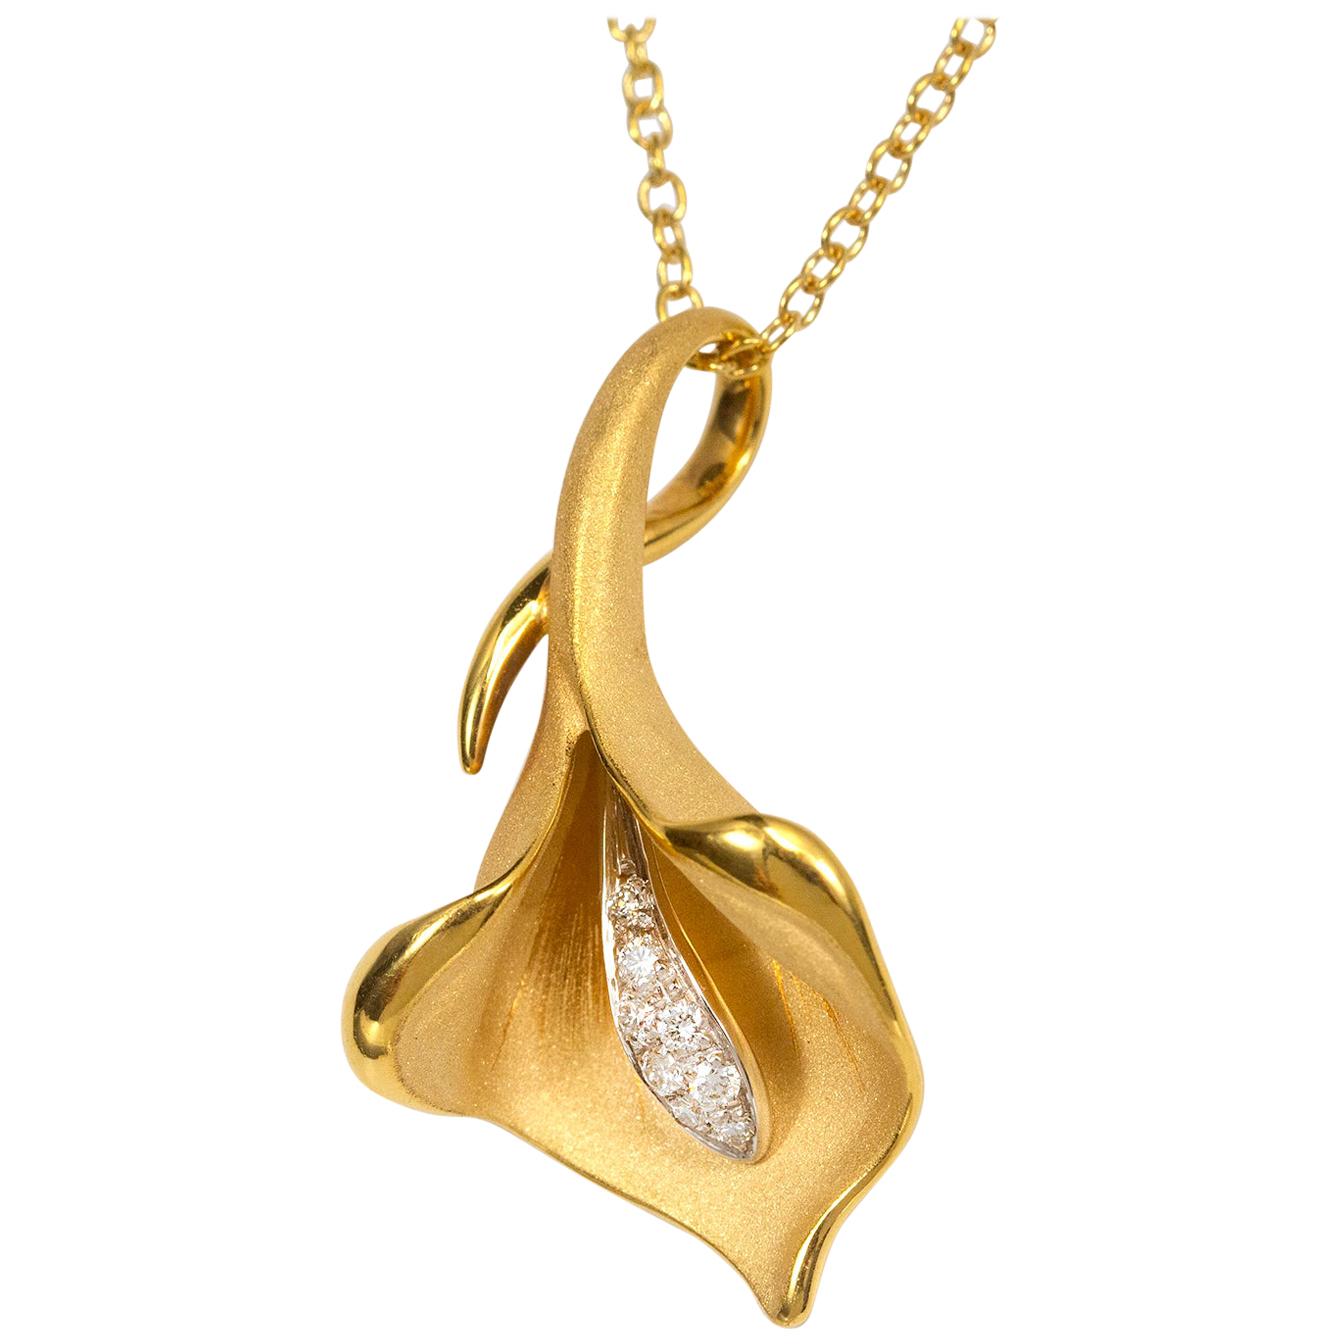 Annamaria Cammilli "Calla" Pendant Necklace with Diamonds in 18 Karat Gold For Sale